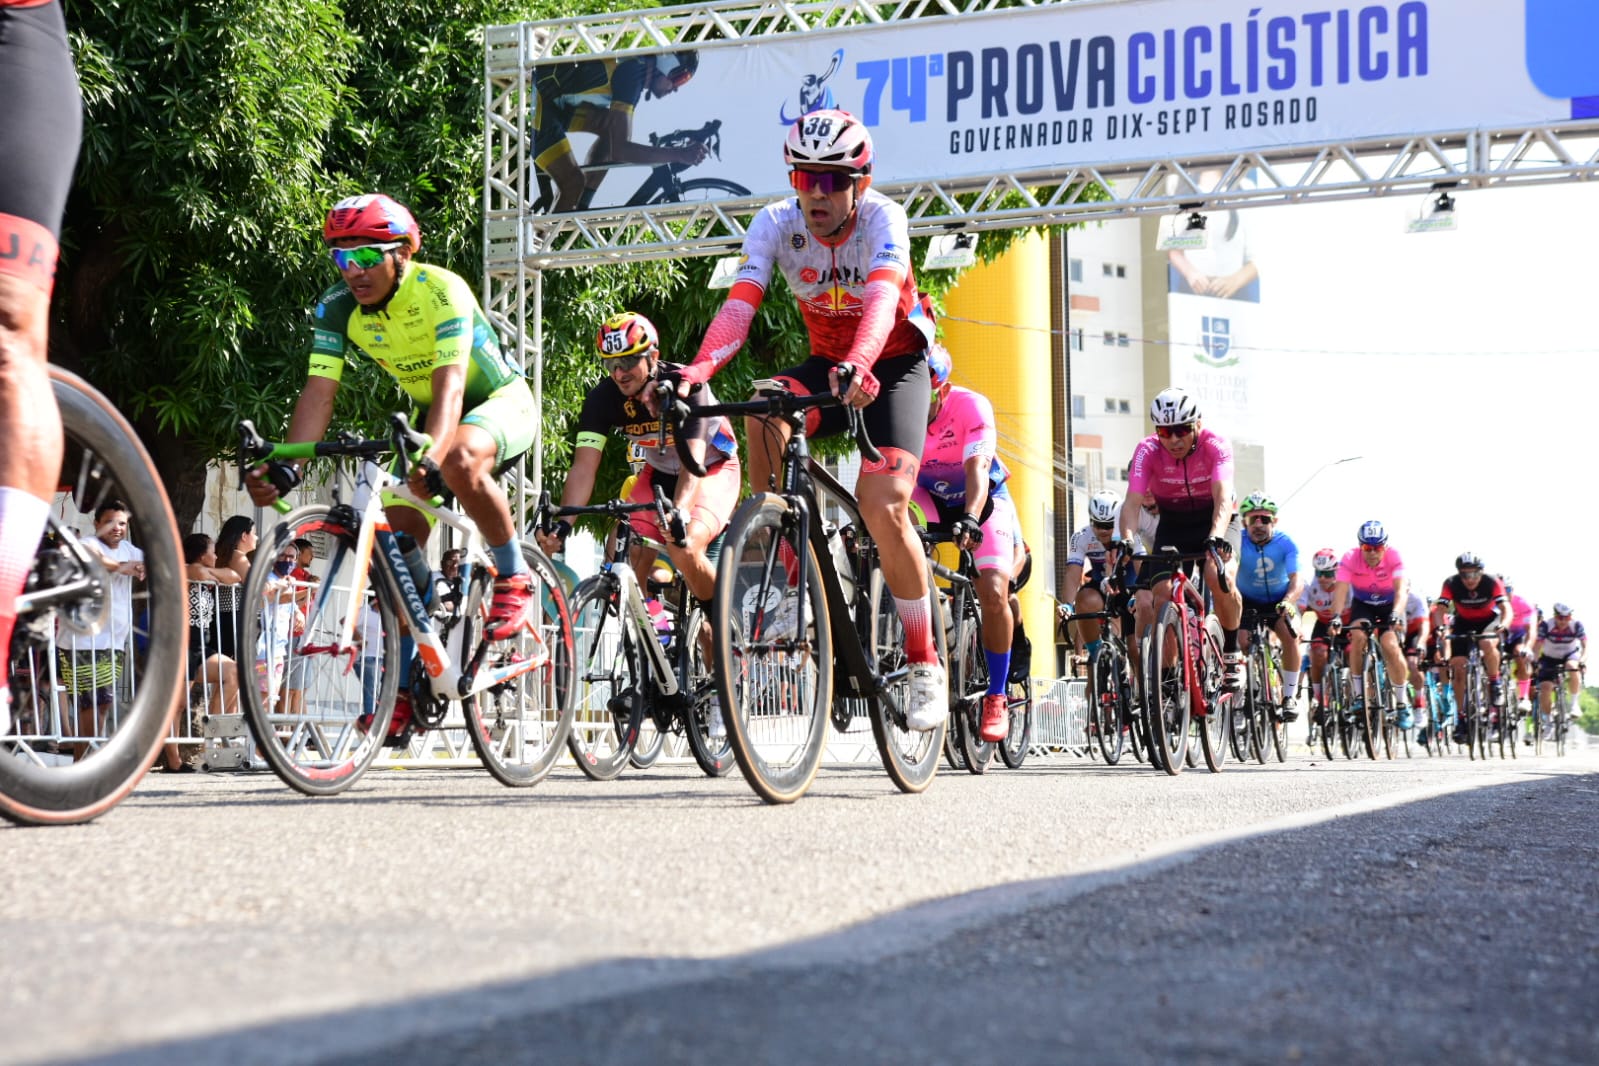 74ª Prova Ciclística Governador Dix-sept Rosado reúne mais de 220 atletas em Mossoró